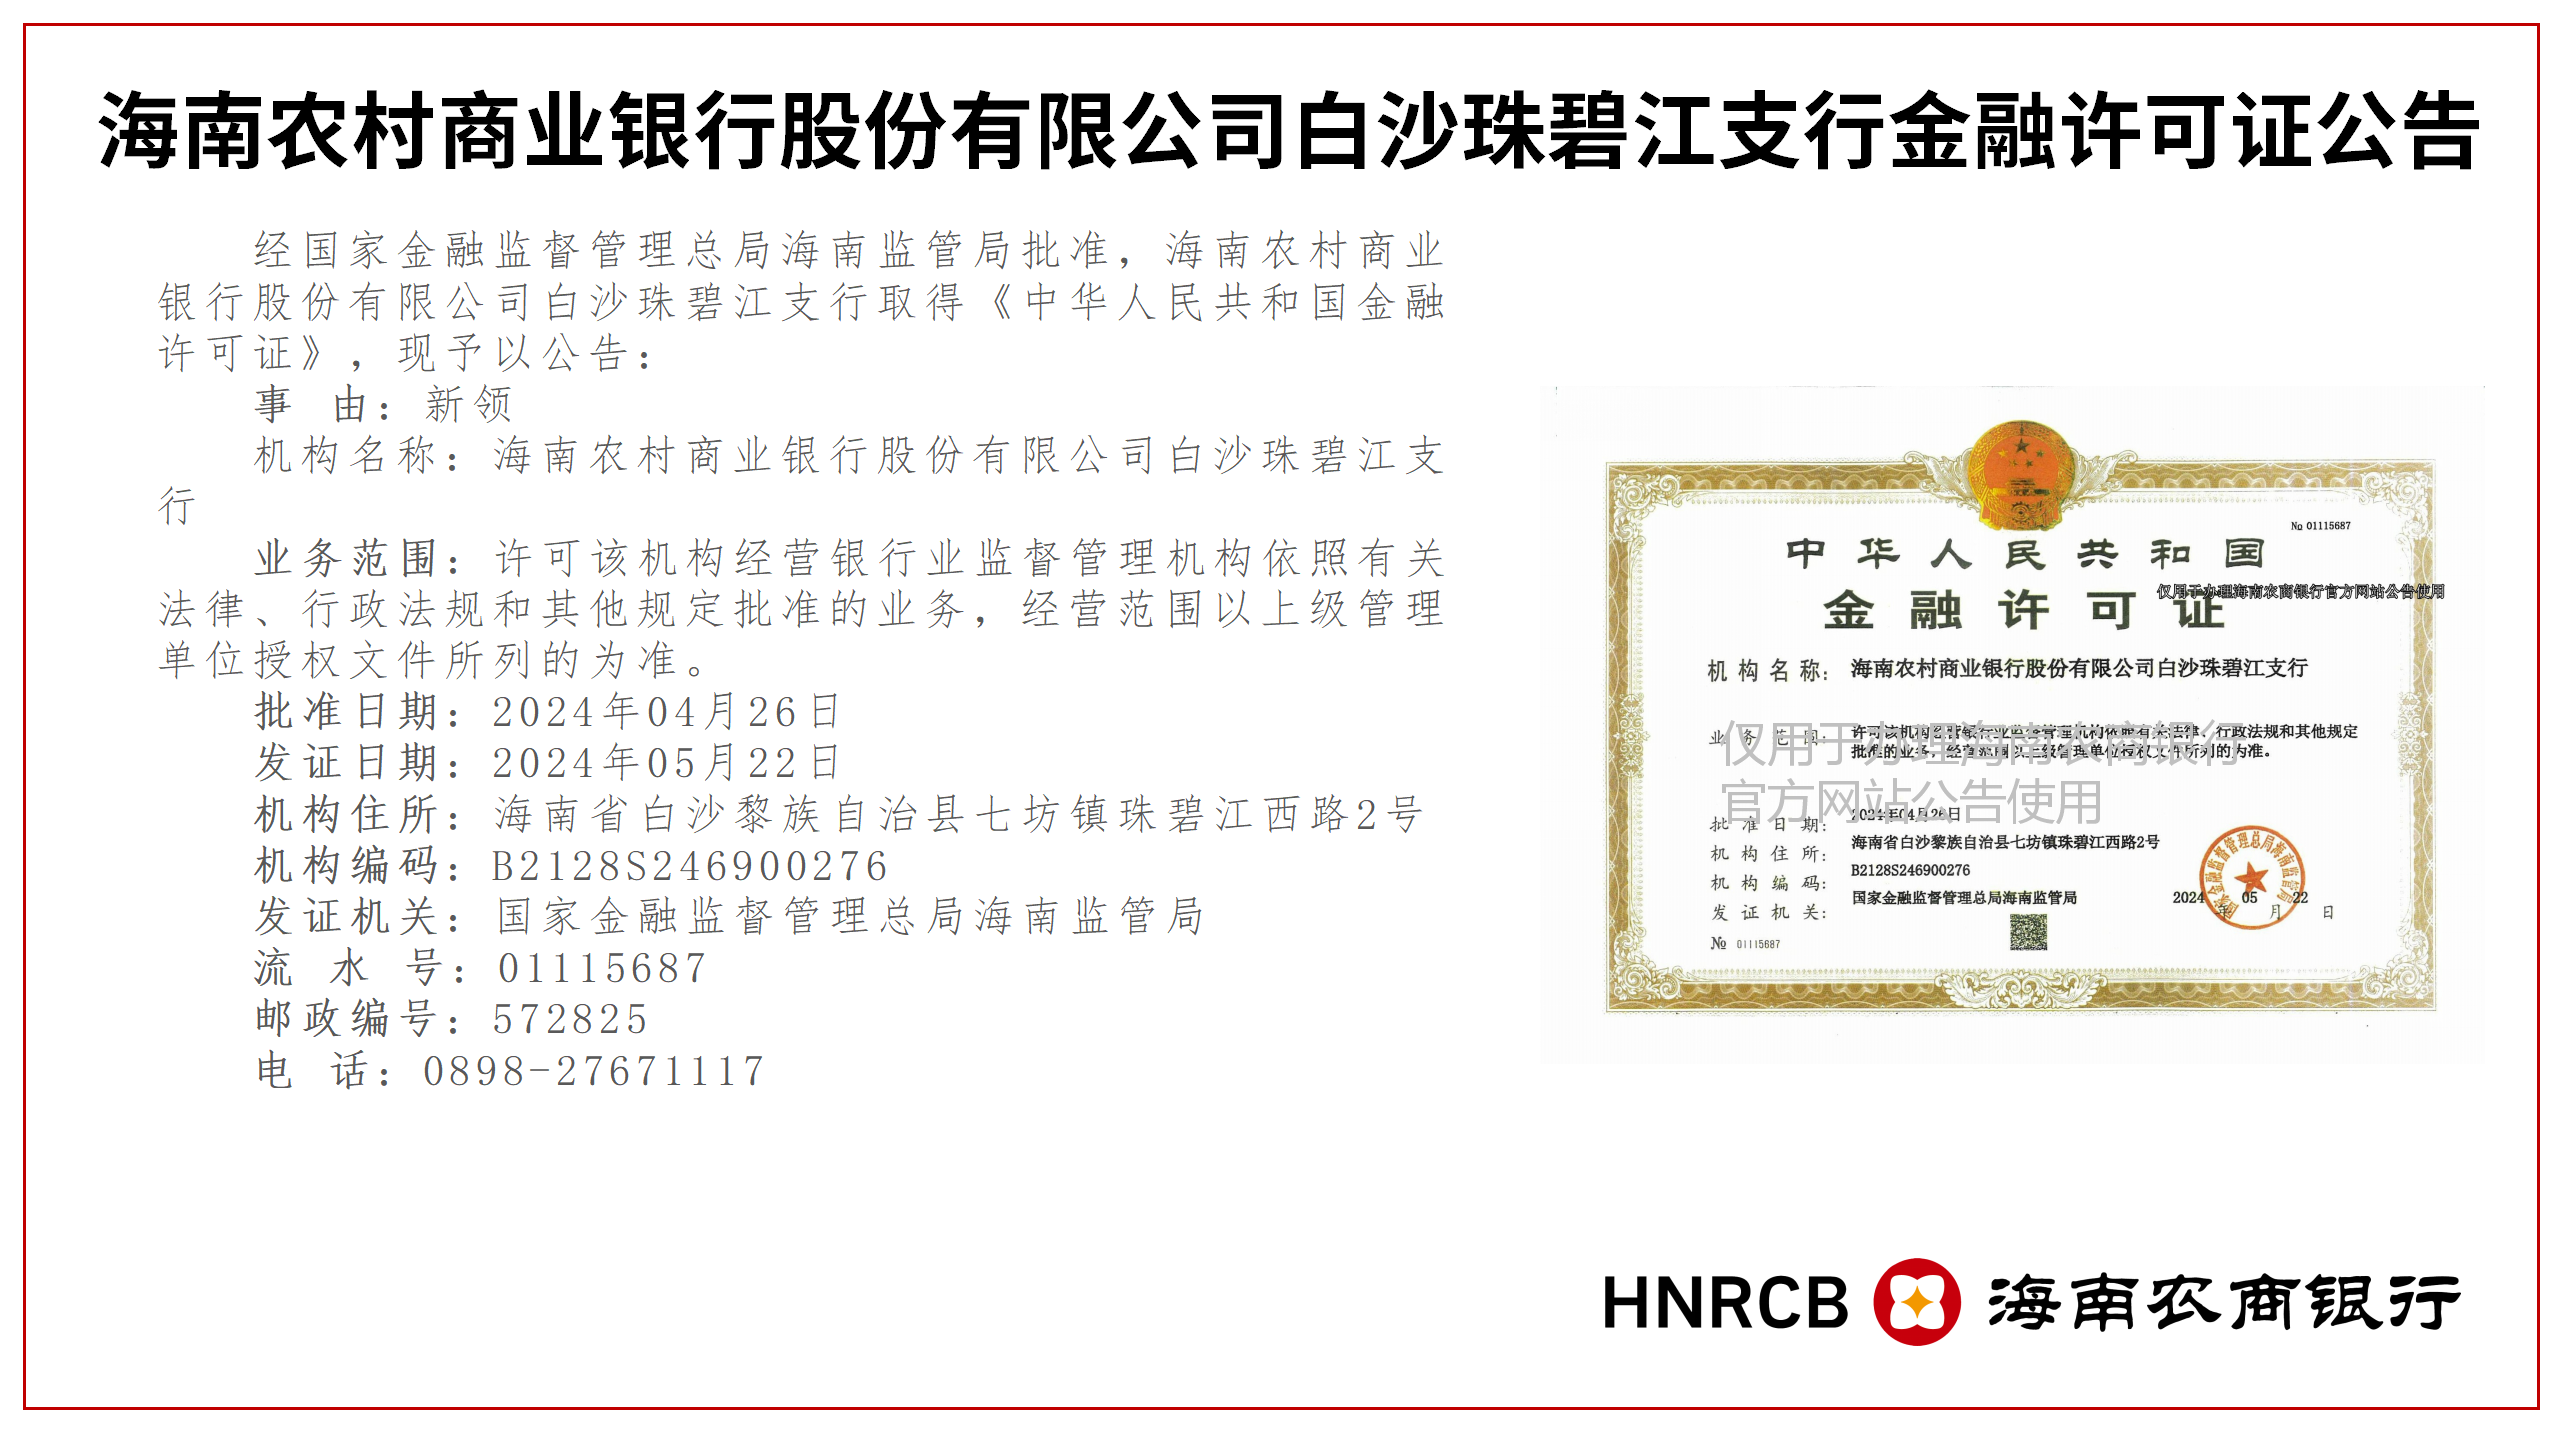 海南农村商业银行股份有限公司白沙辖内16家分支机构金融许可证公告